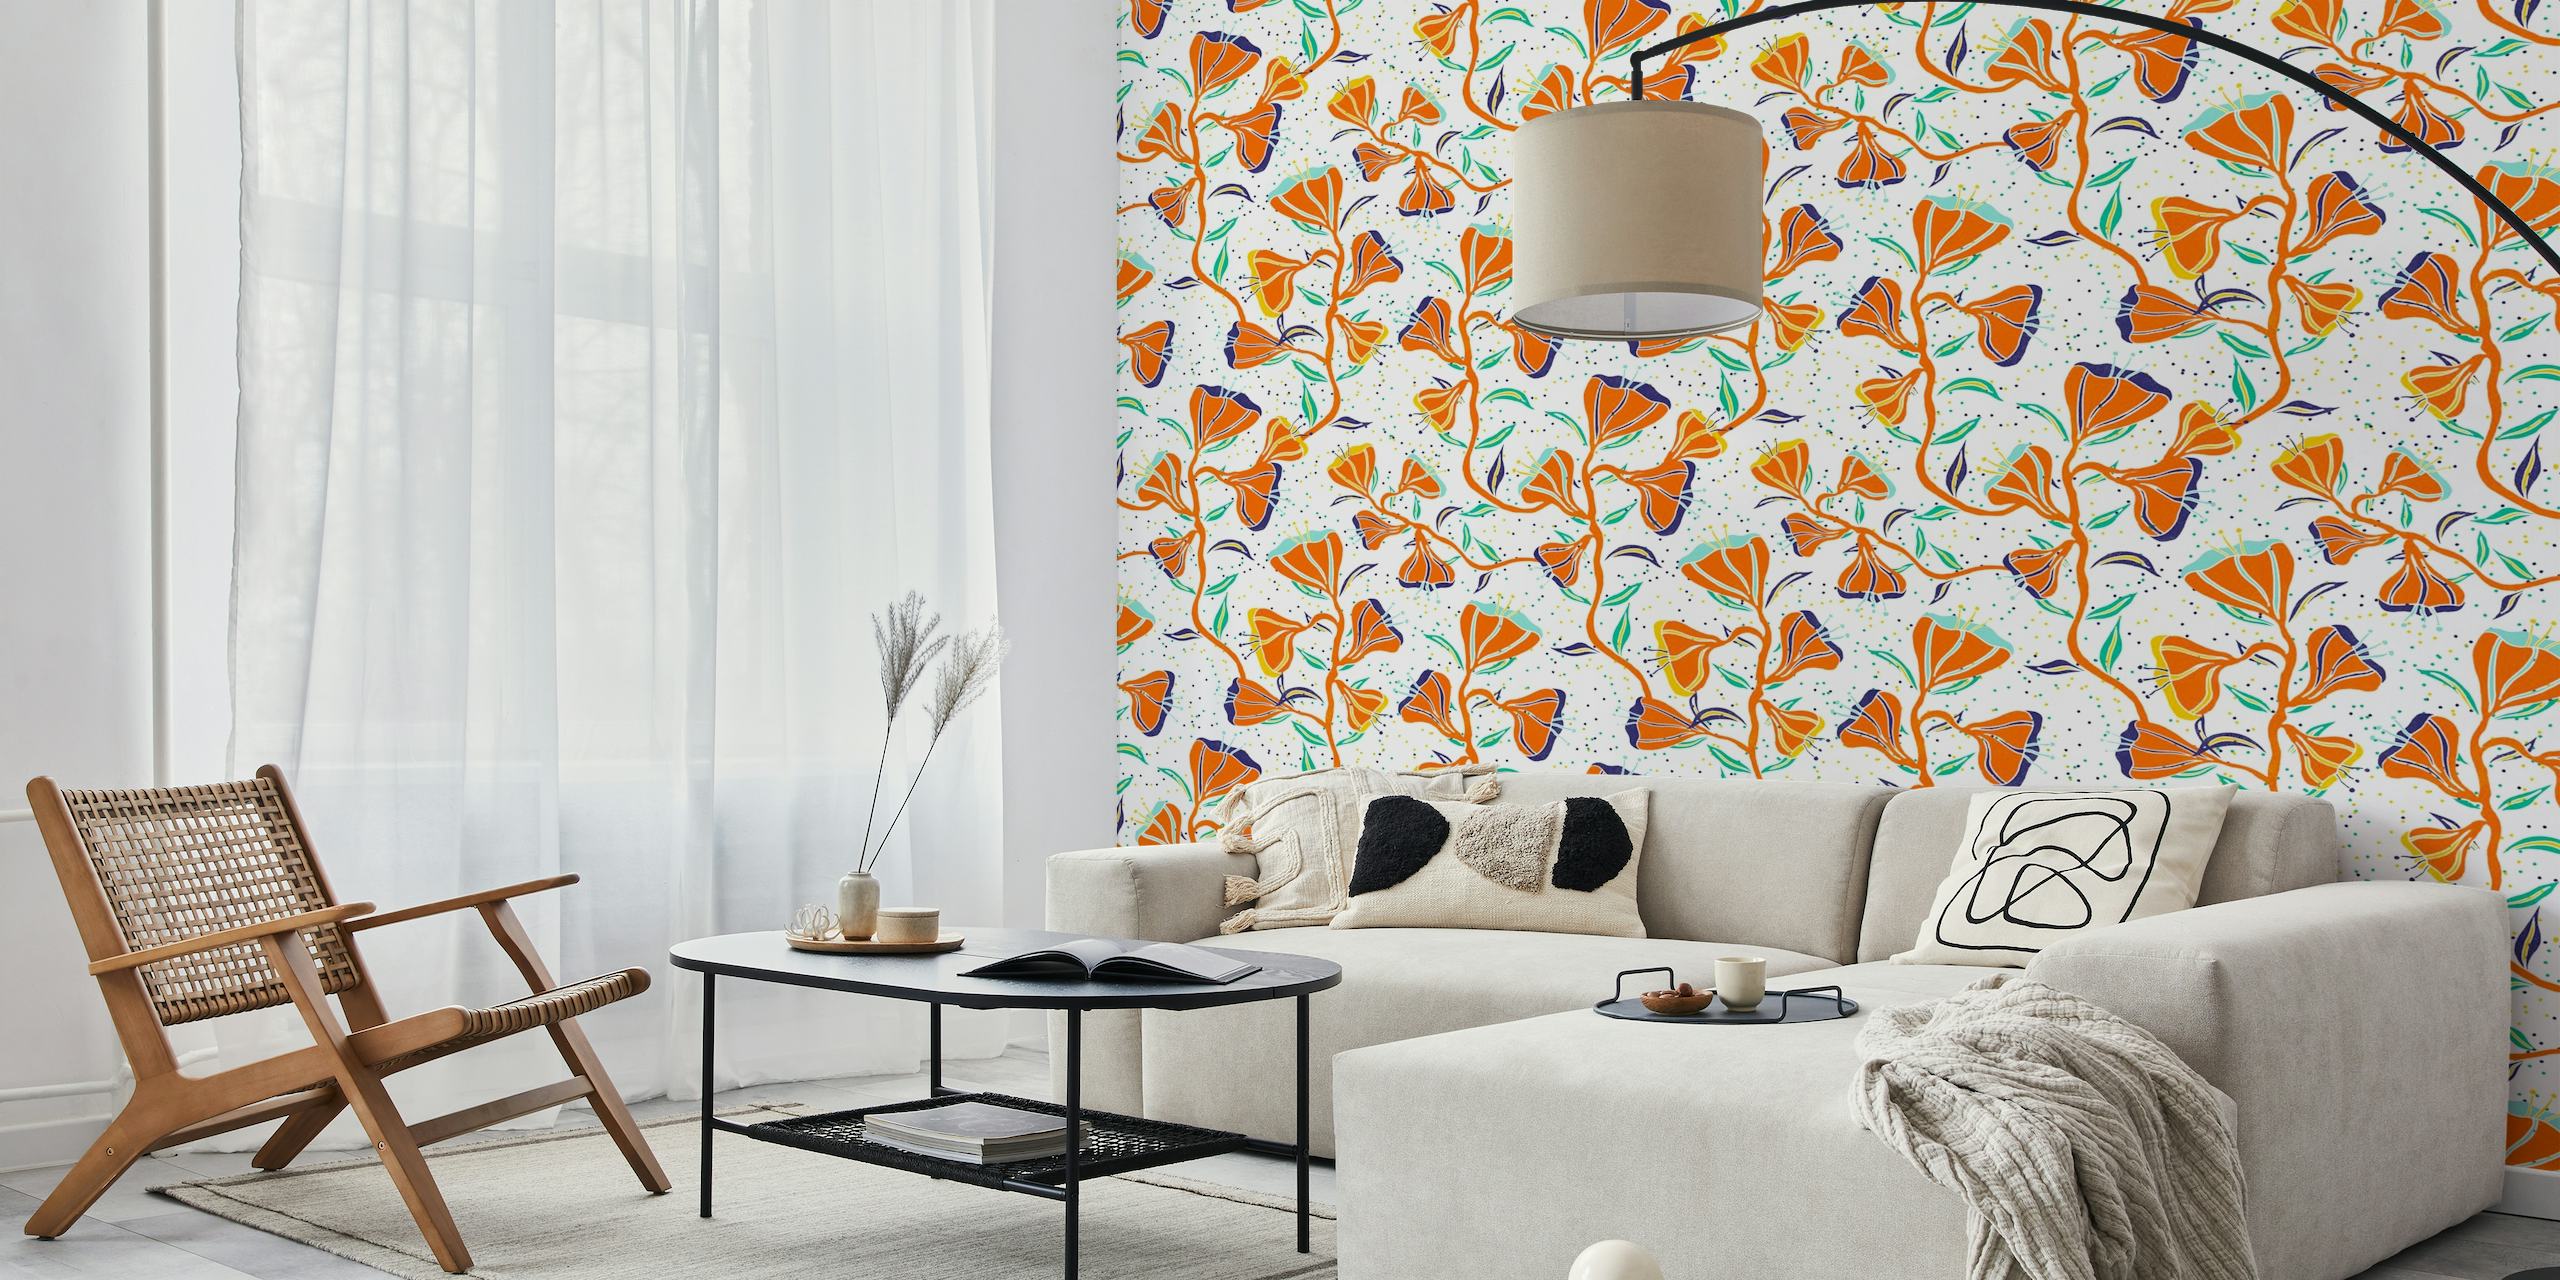 Fotomural vinílico de parede de flores silvestres de verão laranja com estética desenhada à mão em fundo branco